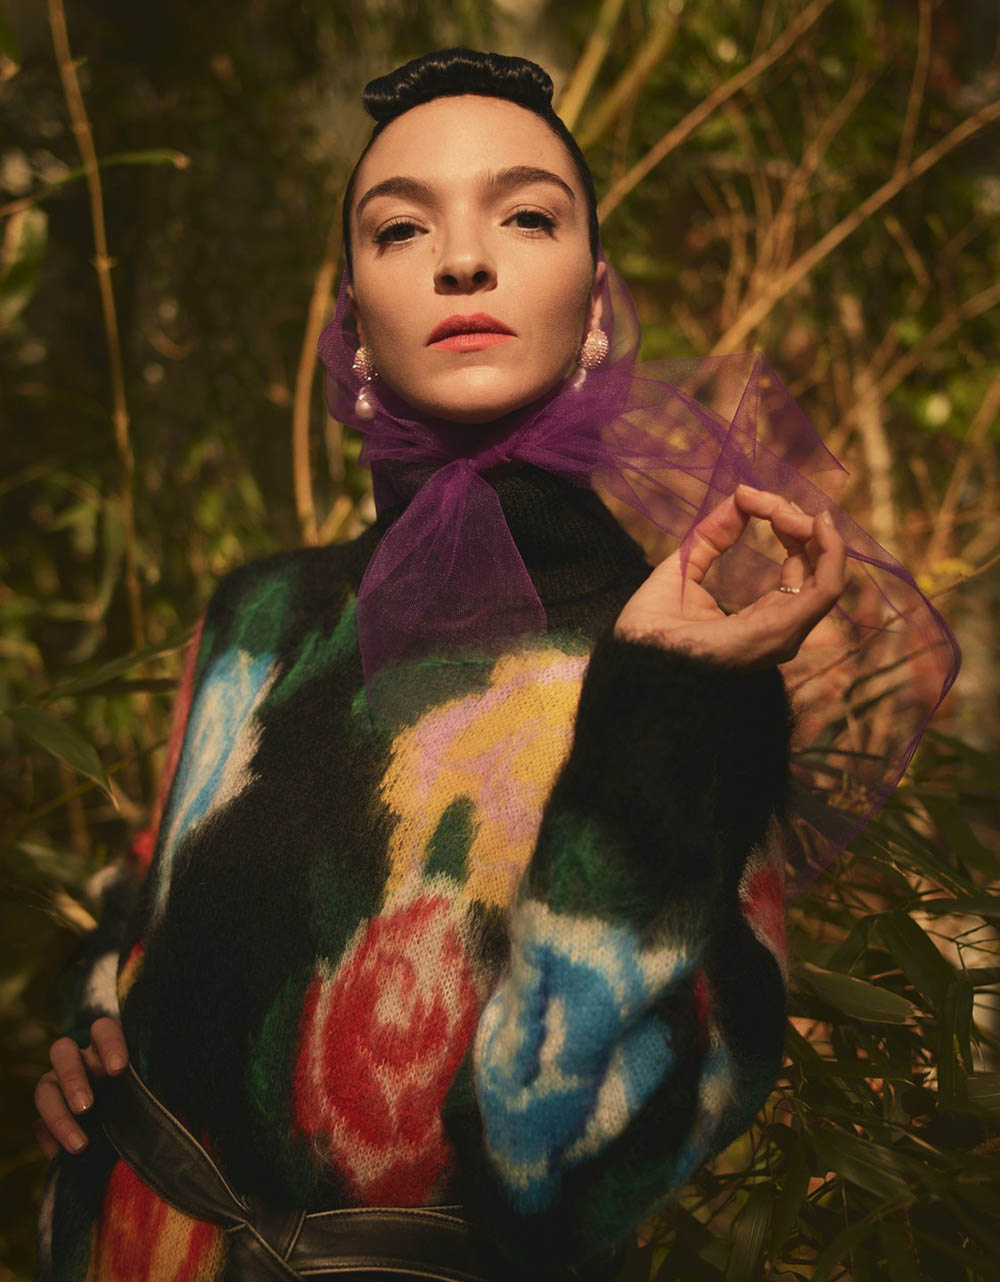 Mariacarla Boscono covers Vogue Mexico May 2018 by Stas Komarovski